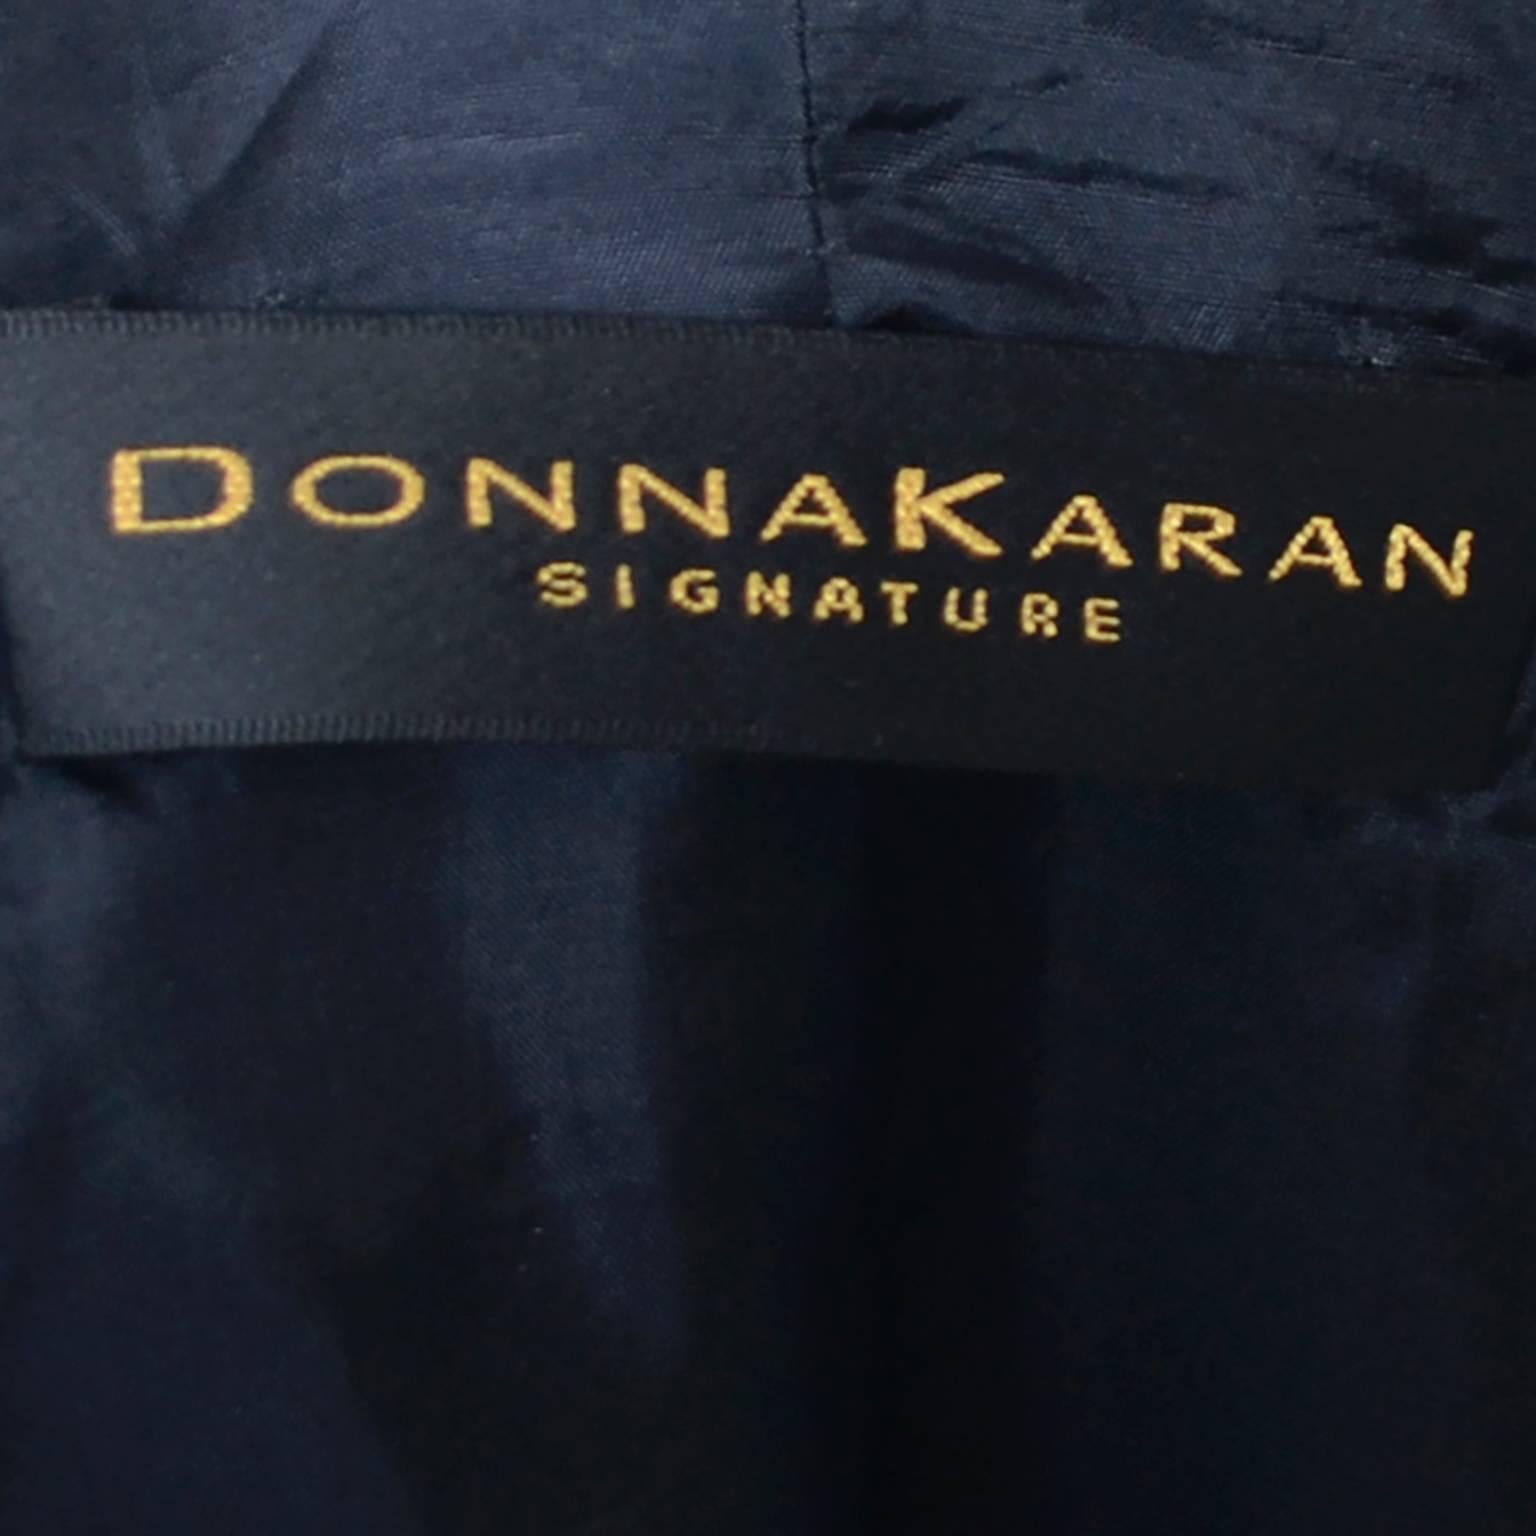 donnakaran signature